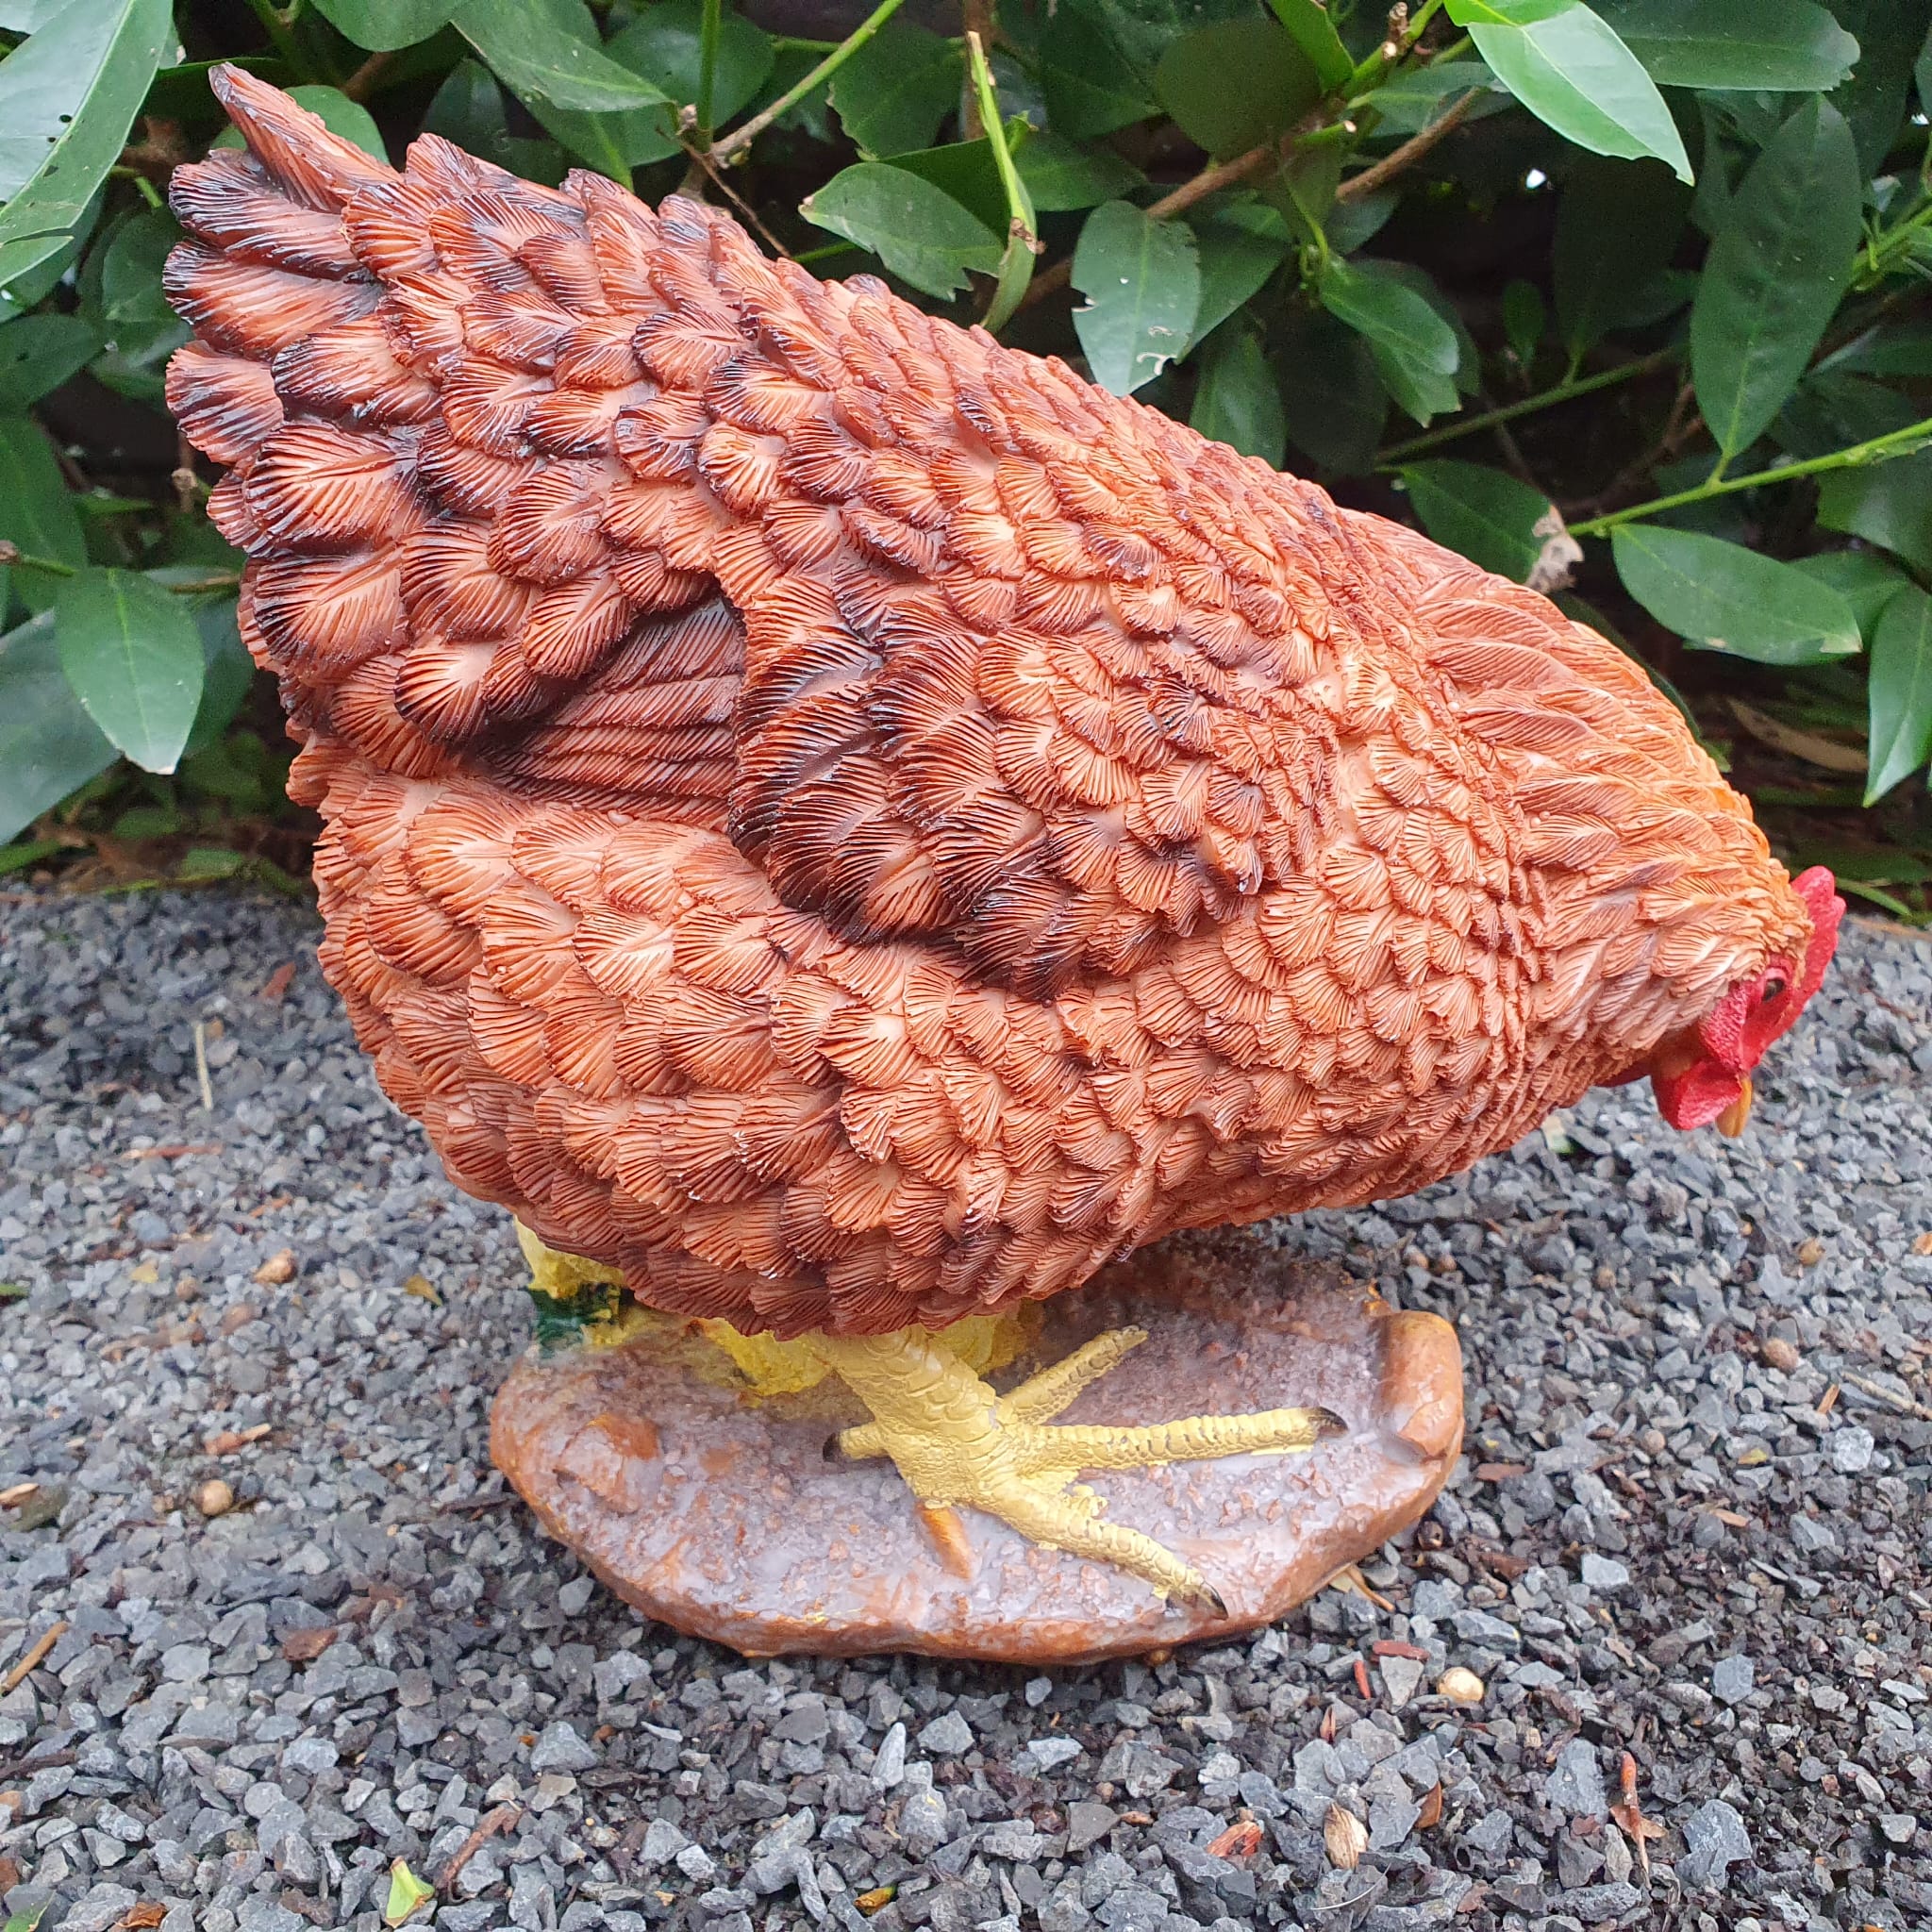 Pickende braune Hühner Gartenfigur mit gelben Küken von hinten